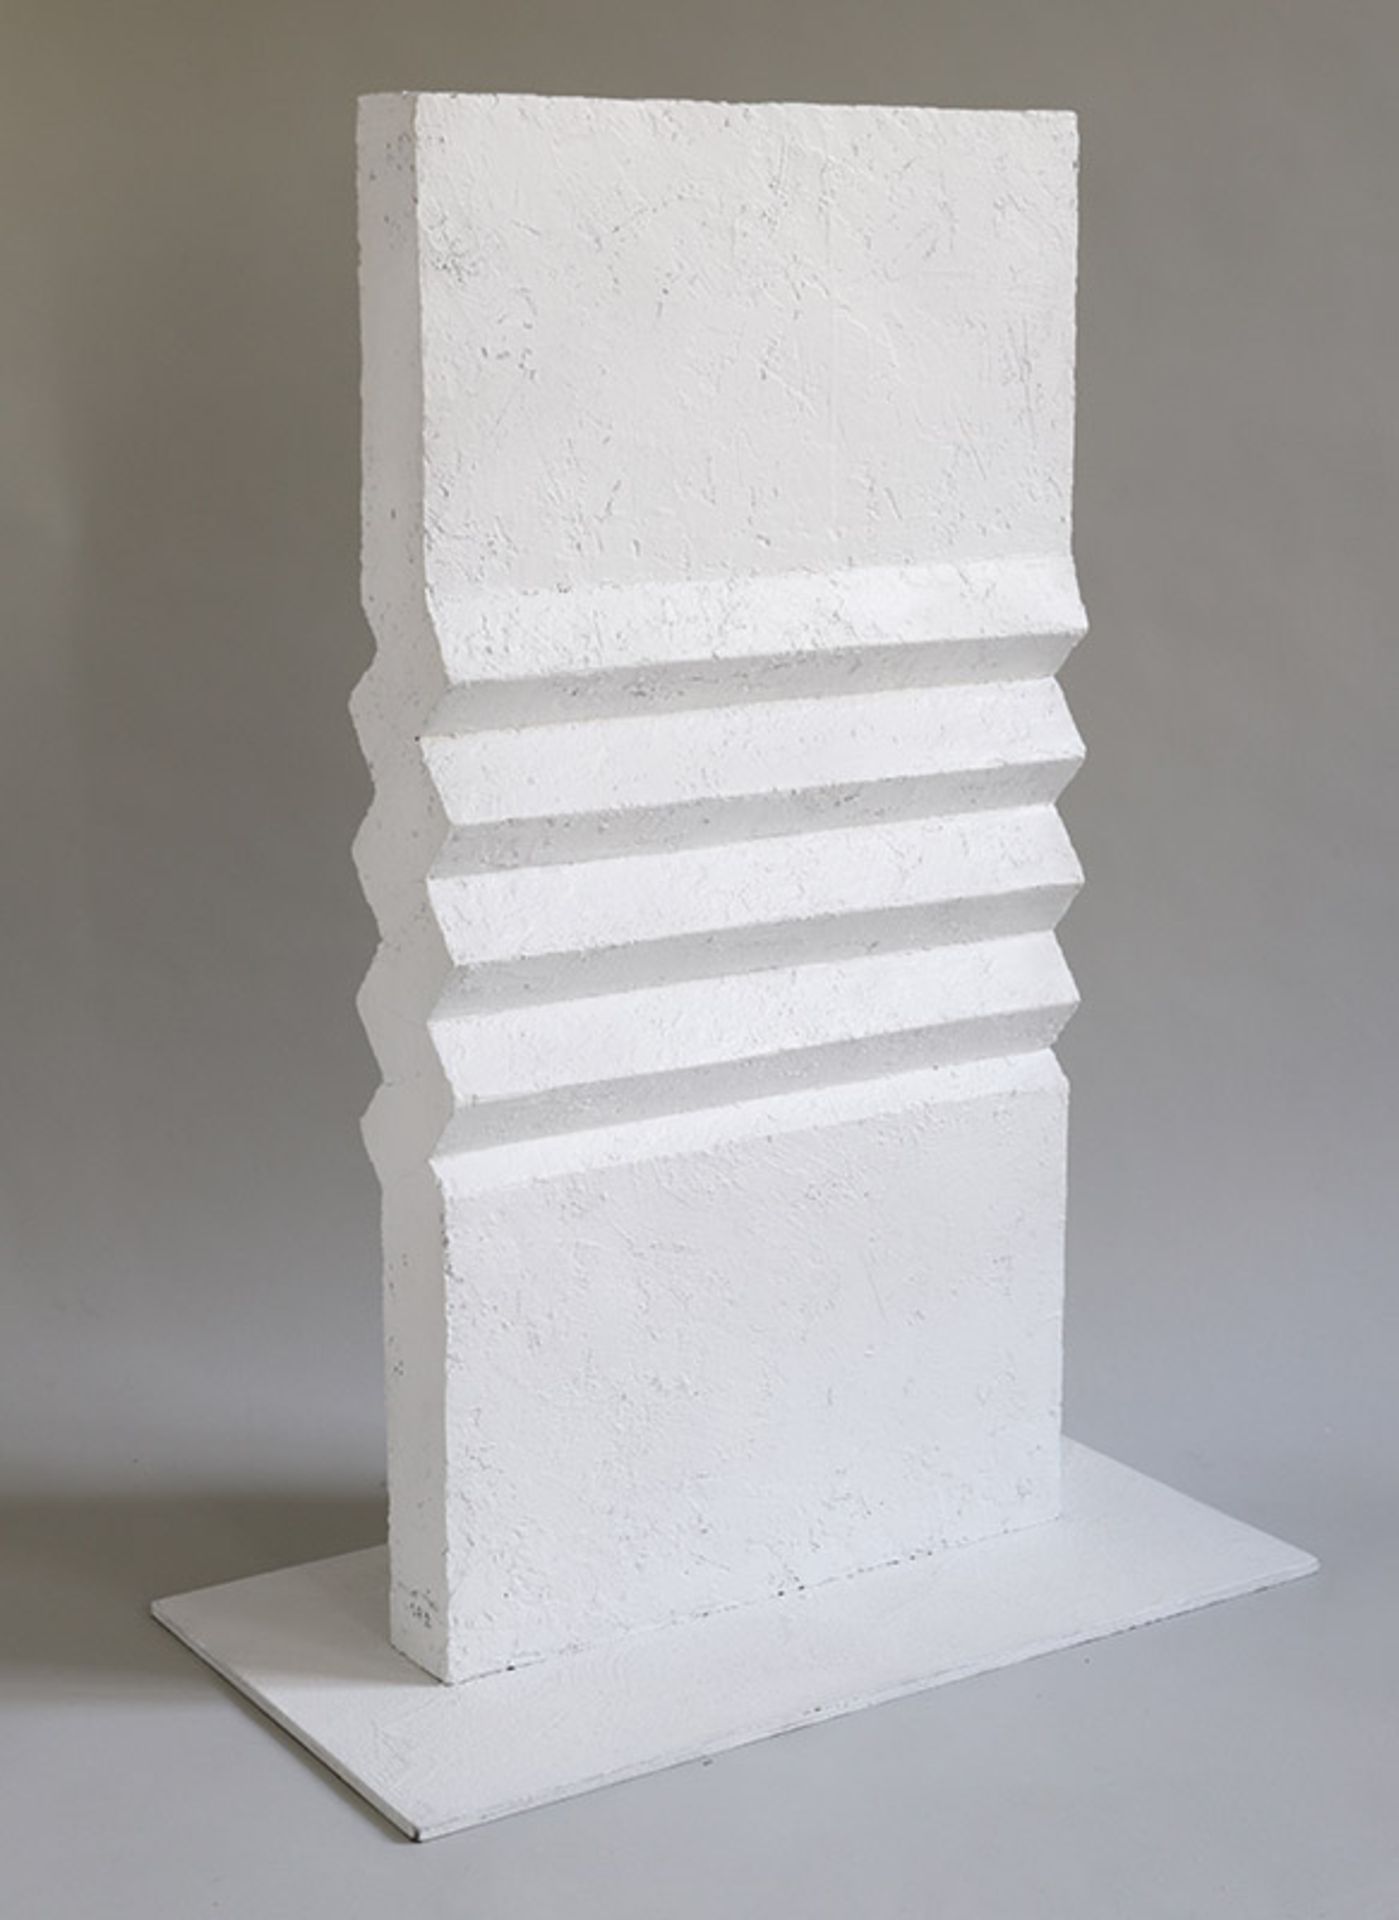 Linienplastik Leo Erb * (1923-2012) 1982 Werkstoff, glänzend weiß strukturierte Oberfläche. 78,5 x